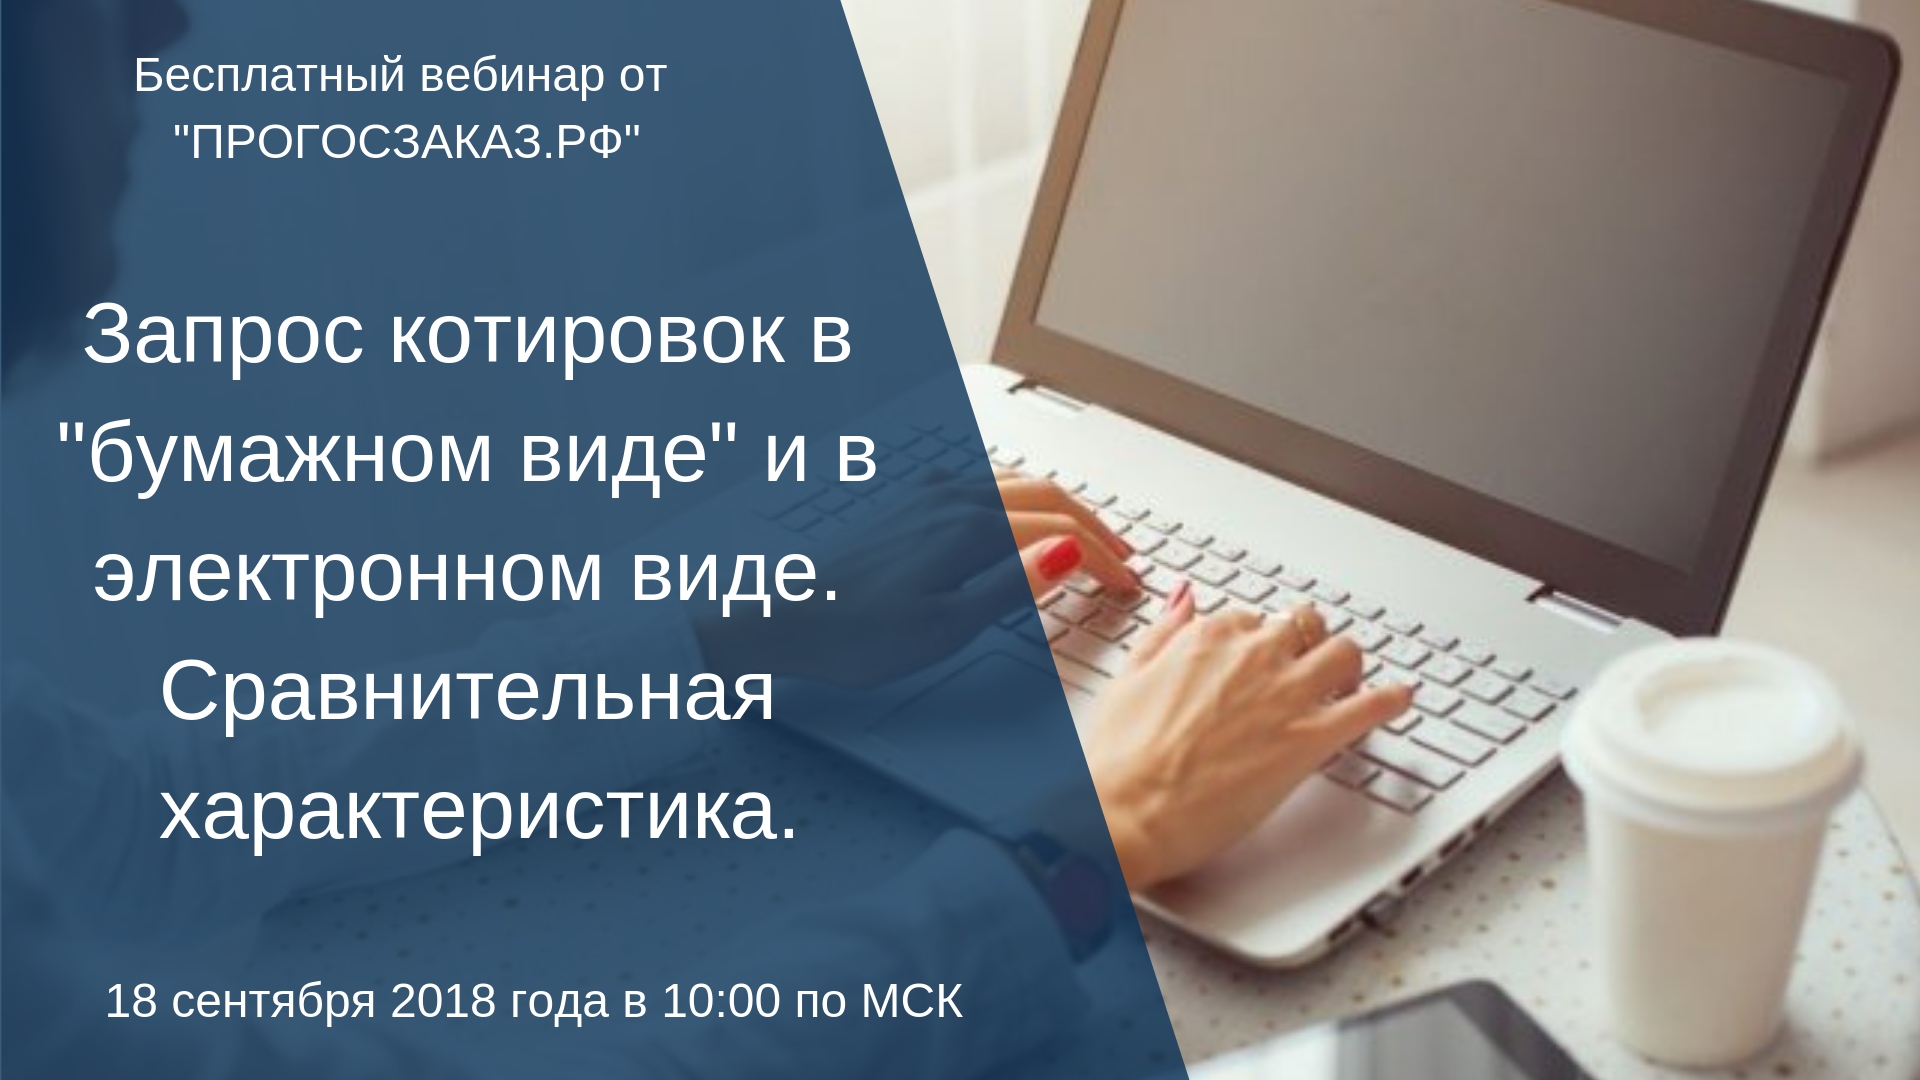 18 сентября 2018 года в 10:00 по Мск состоится онлайн вебинар на тему: «Запрос котировок в «бумажном виде» и в электронном виде. Сравнительная характеристика»